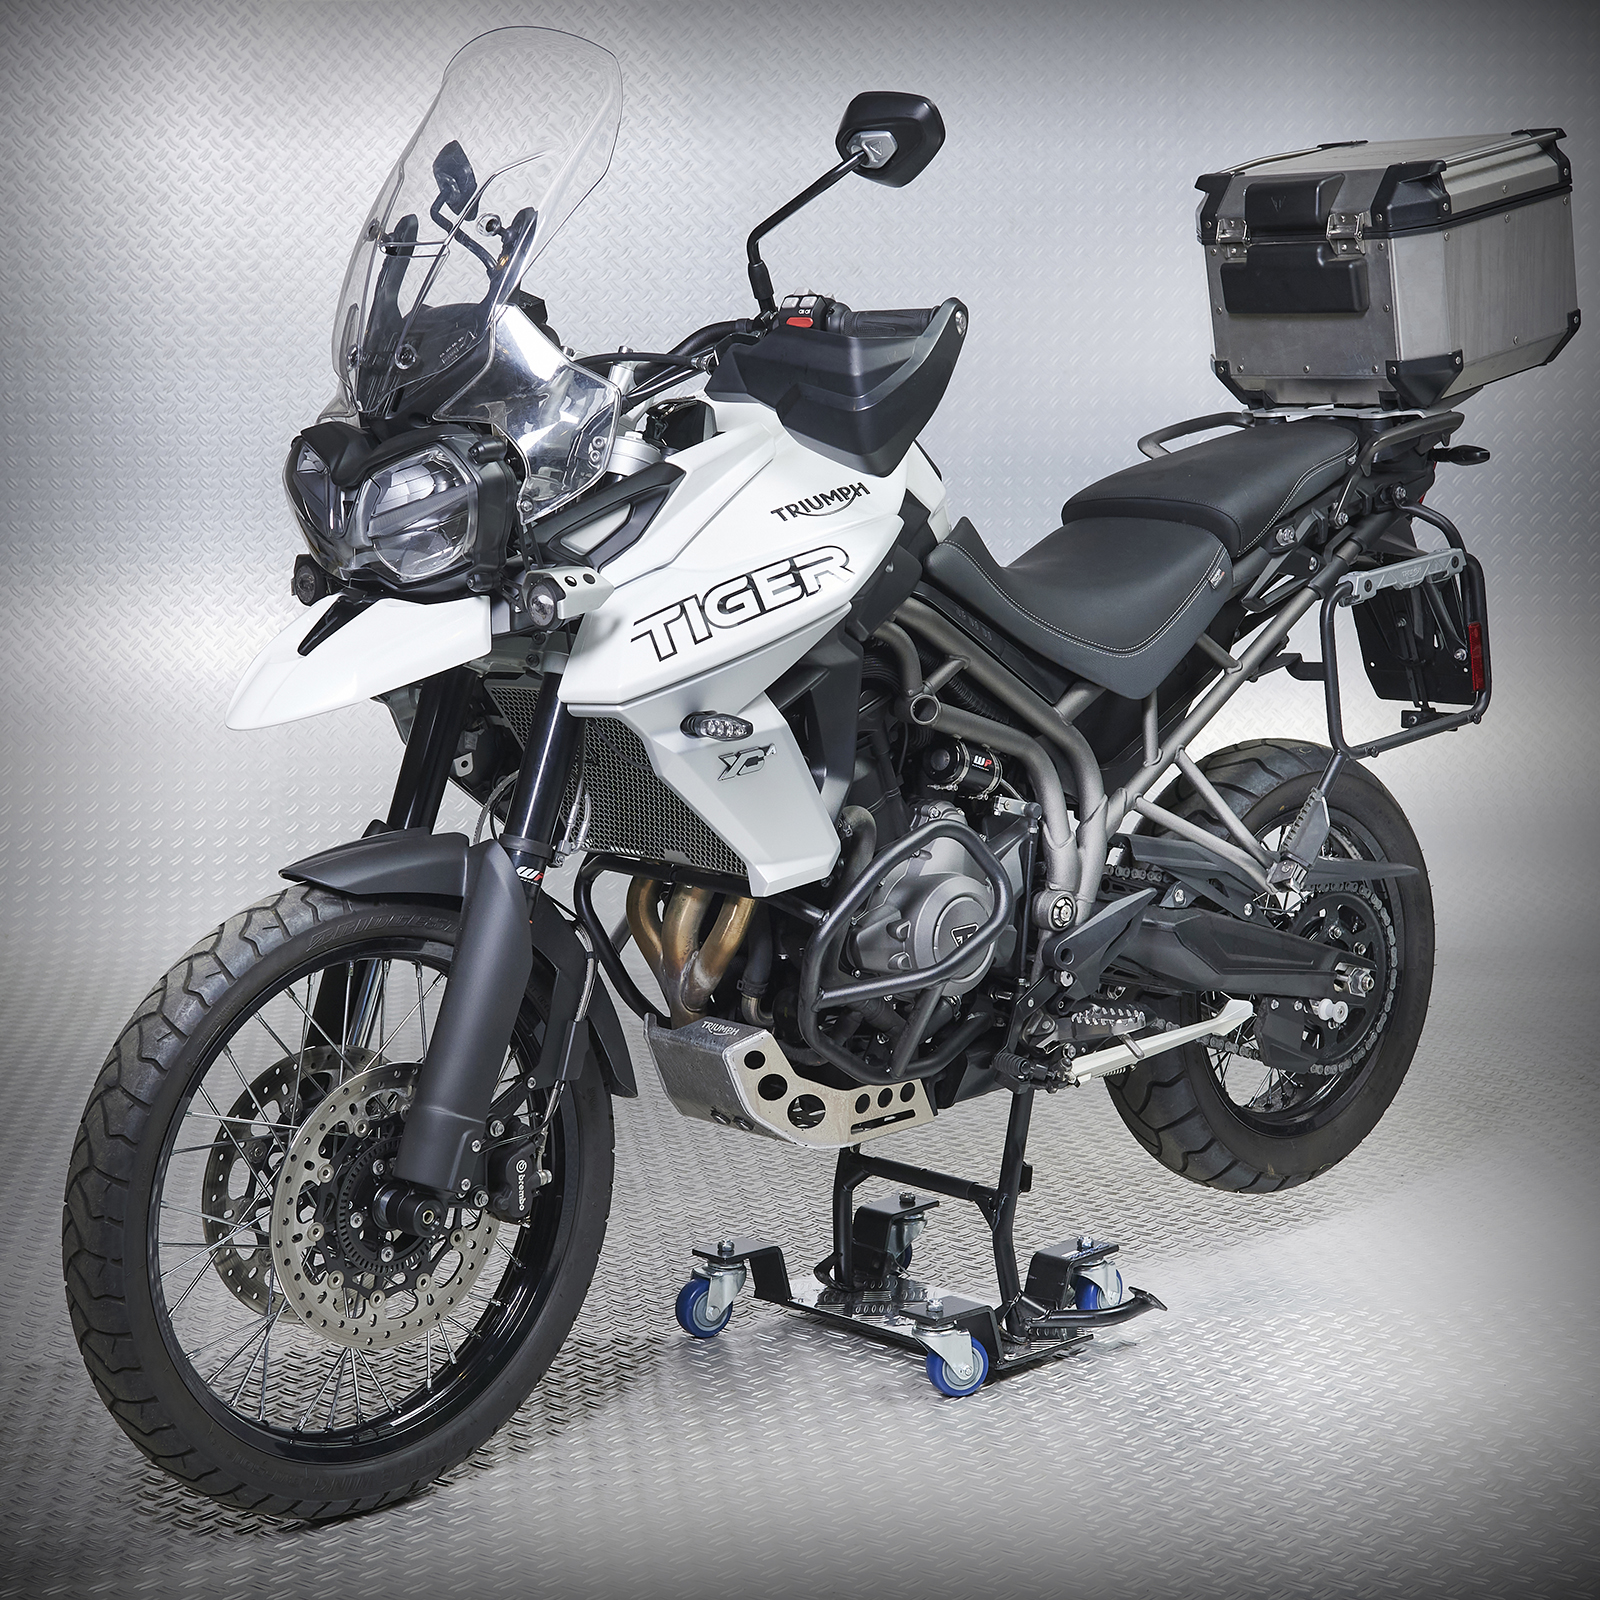 MOTOMOVE® BC2 - Béquille Centrale - Range moto pour 2 roues 